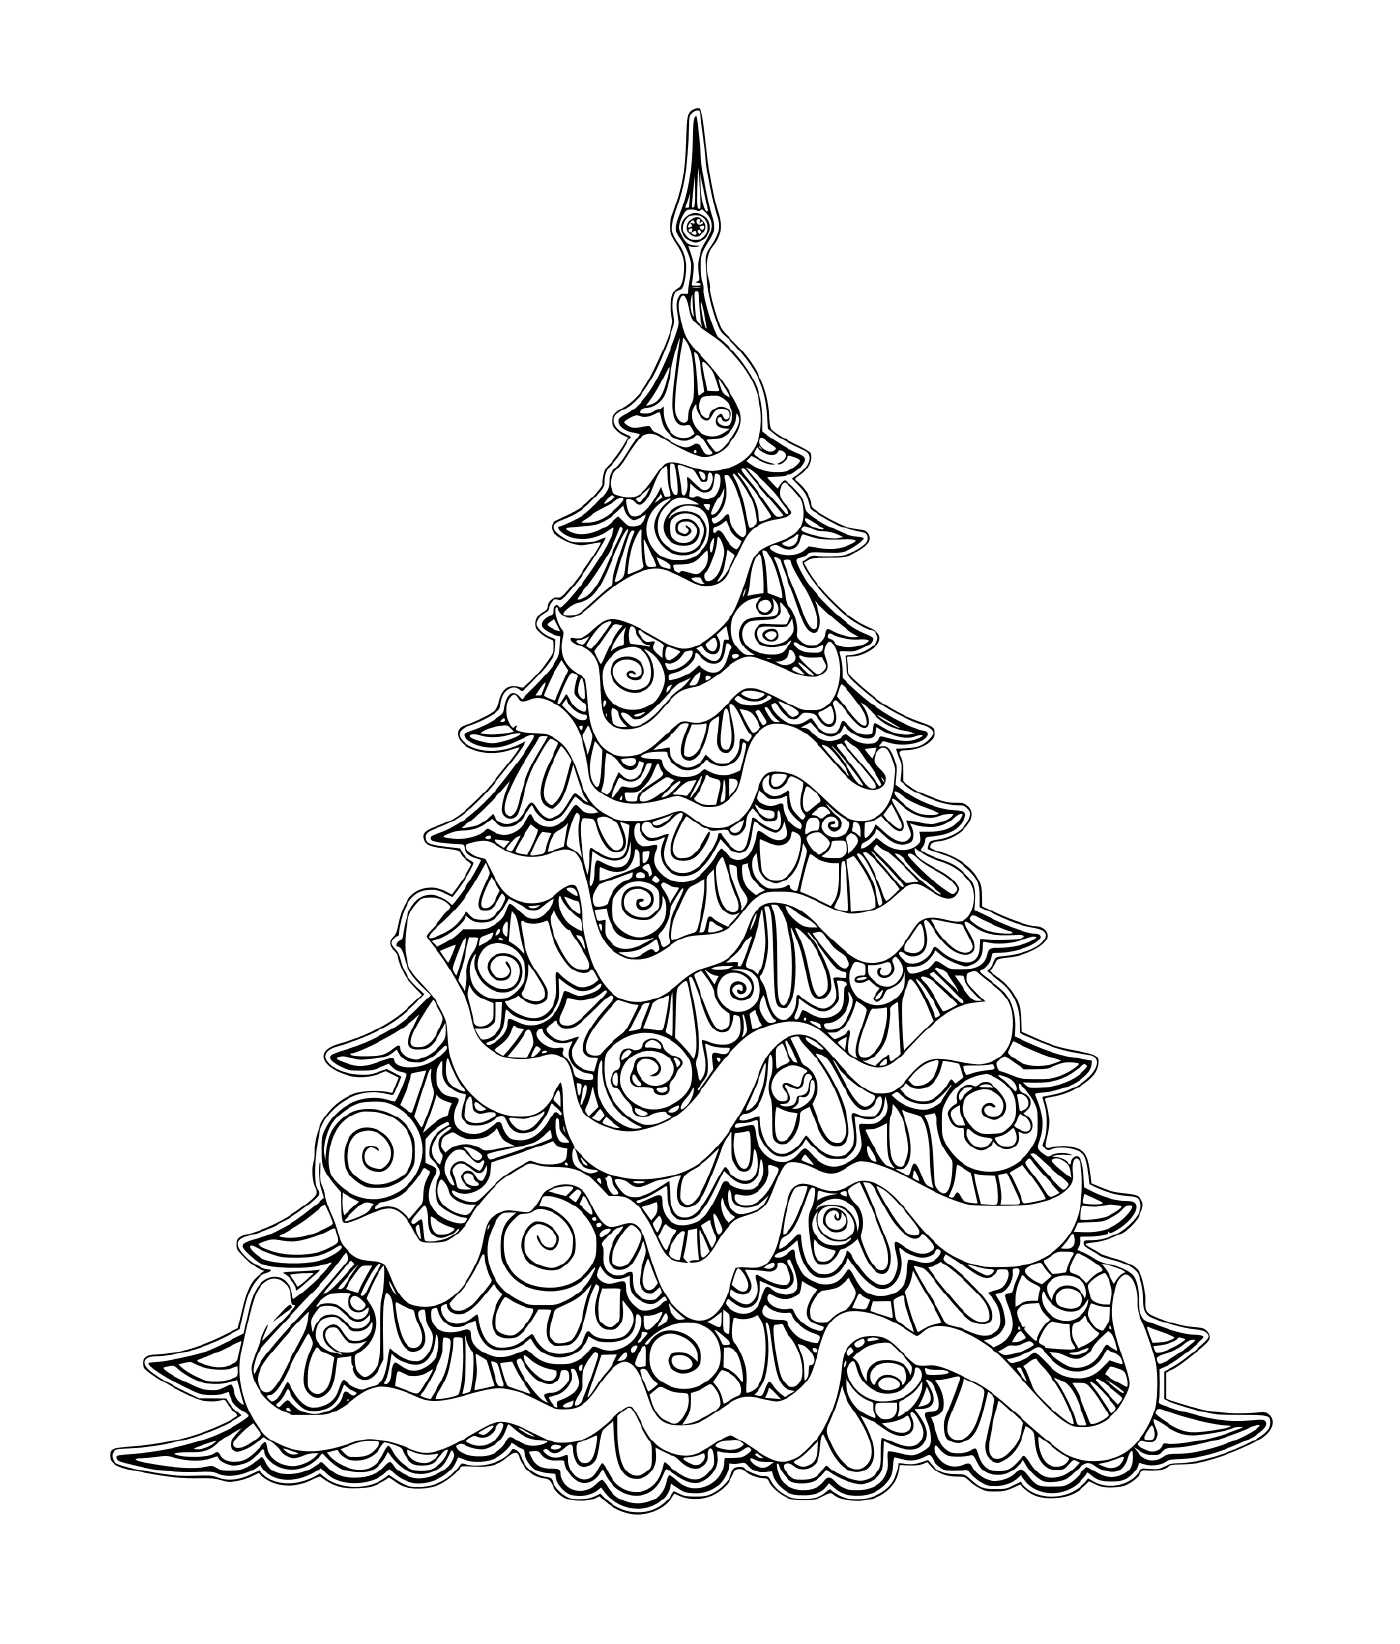  带装饰品的豪华圣诞树 